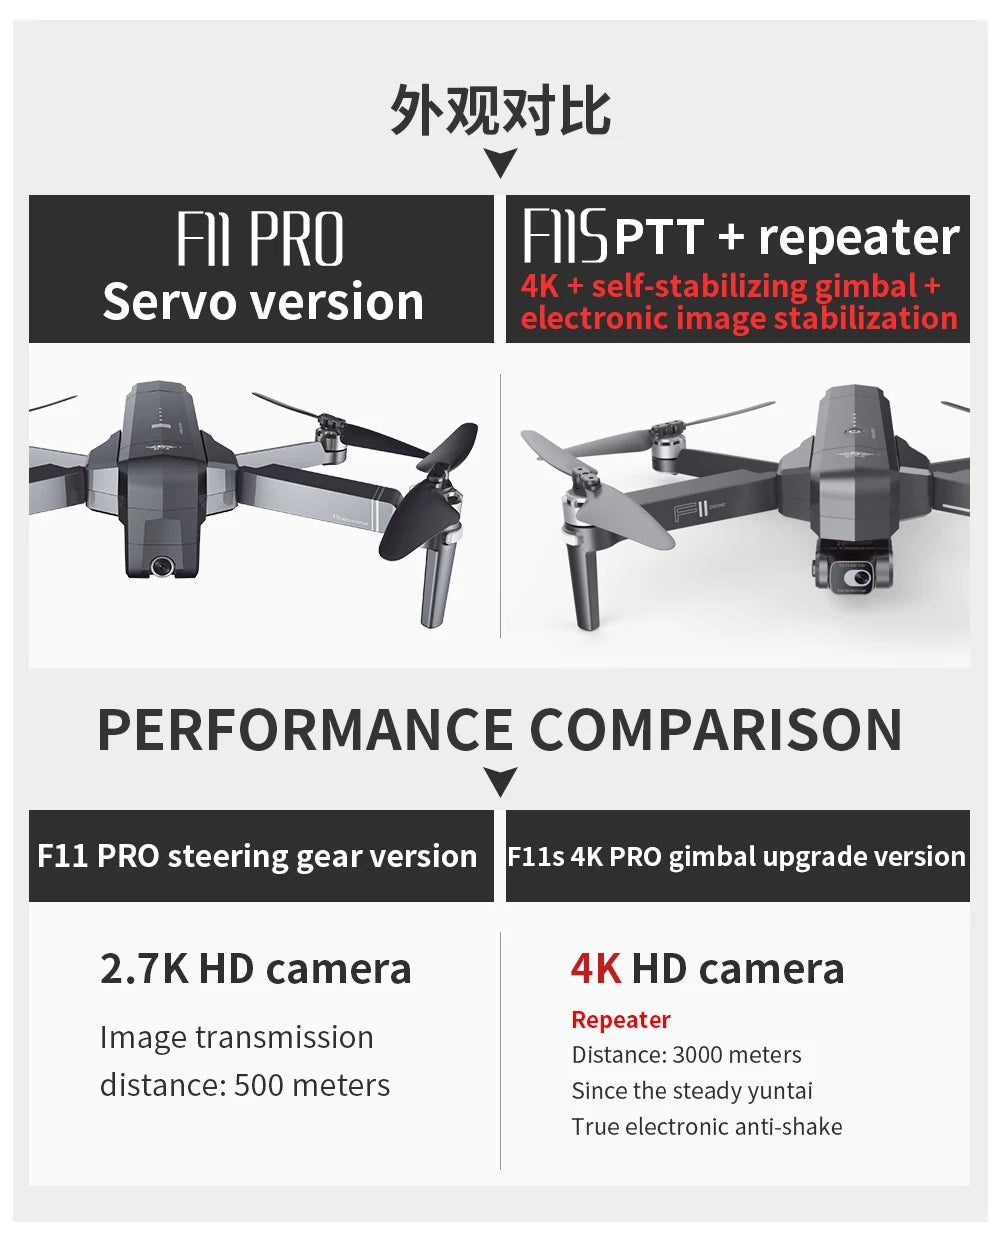 SJRC F11 / F11S  Pro Drone, bk>xtEb FII PRO Fsptt repeater